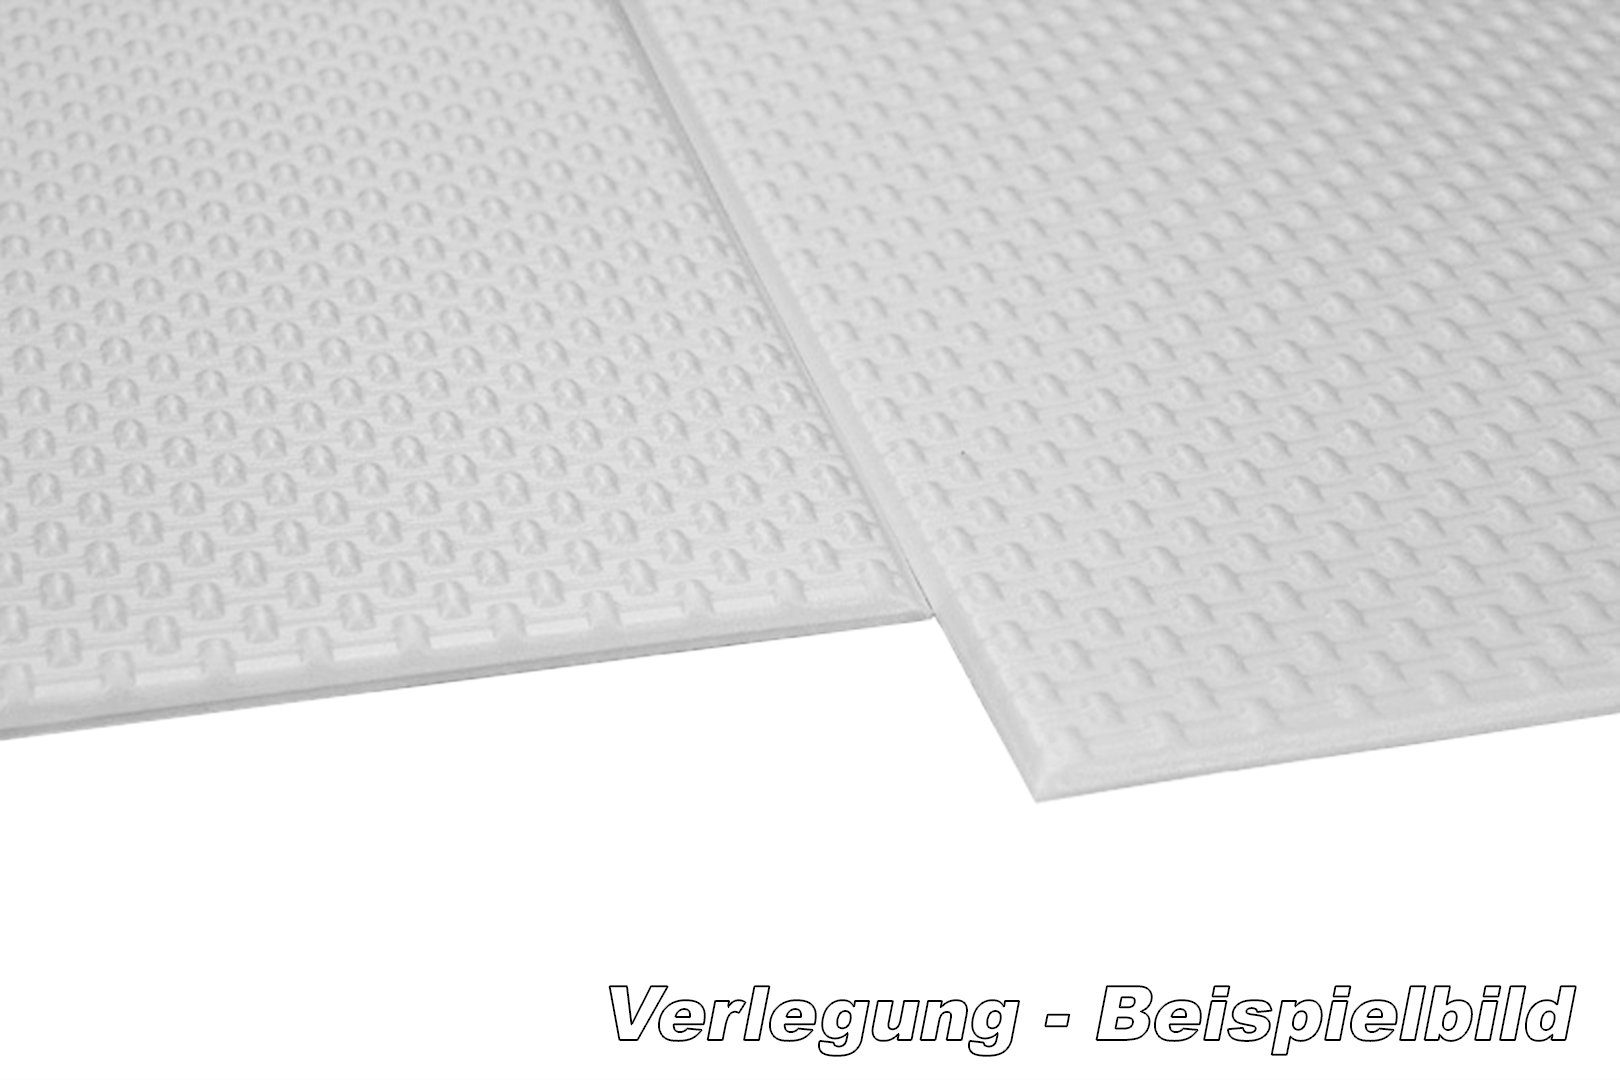 Deckenplatten Styropor Auswahl XPS qm (2 50x50cm Wand- und - formfest) BS große Wanddekoobjekt Platten Hexim Deckenverkleidung Dekor farbige Nr.98